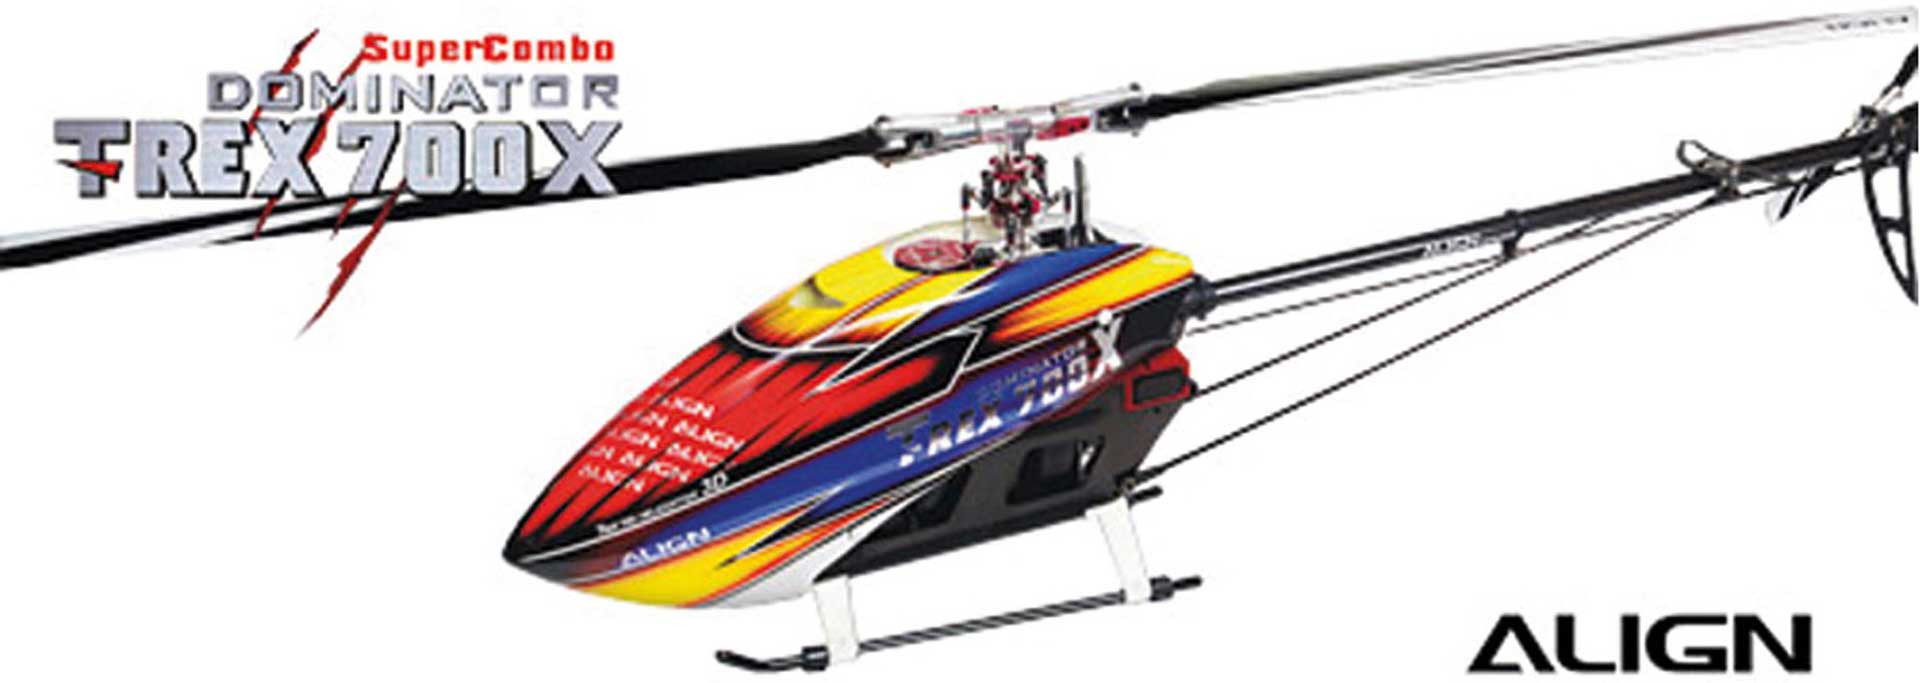 ALIGN T-REX 700X DOMINATOR SUPER COMBO inkl. MB+ Hubschrauber / Helikopter